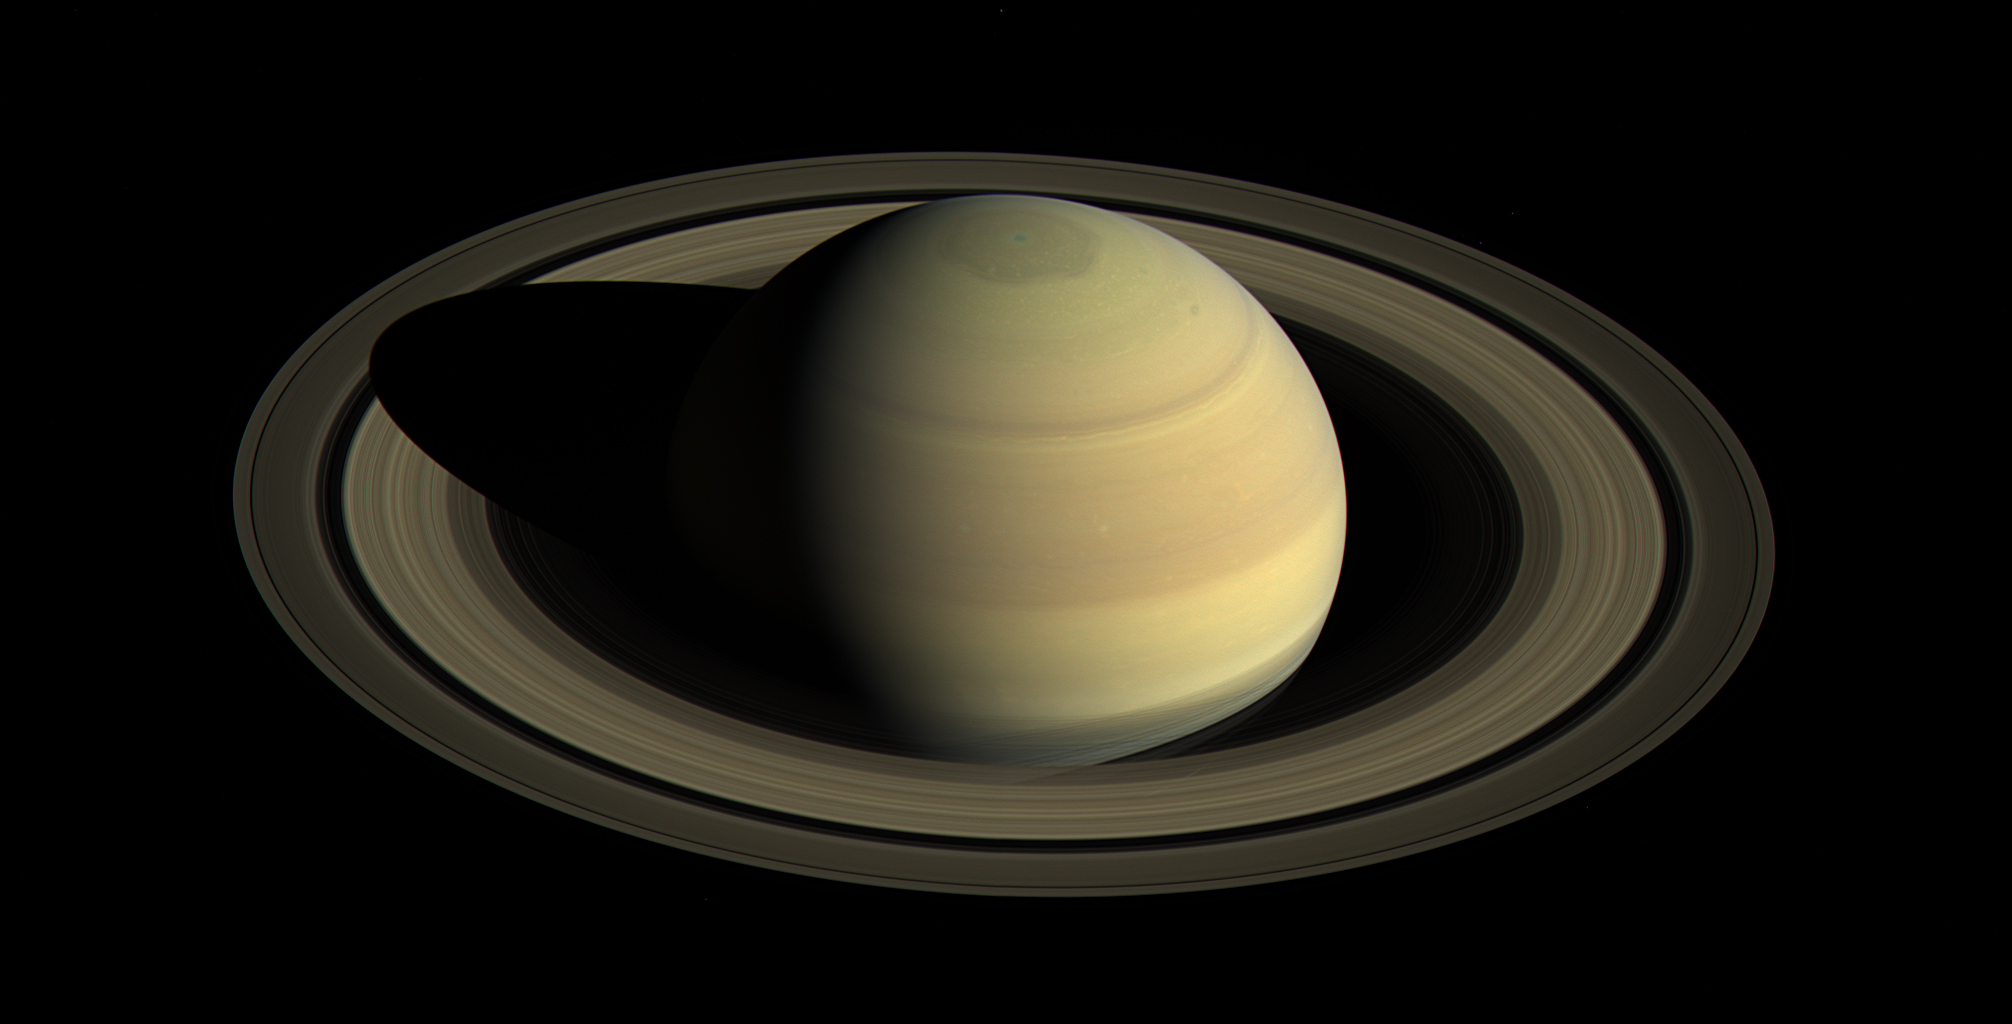 Saturno visto em imagem reprocessada a partir de fotografia da sonda Cassini (divulgada em 15 de setembro de 2016 pela NASA).